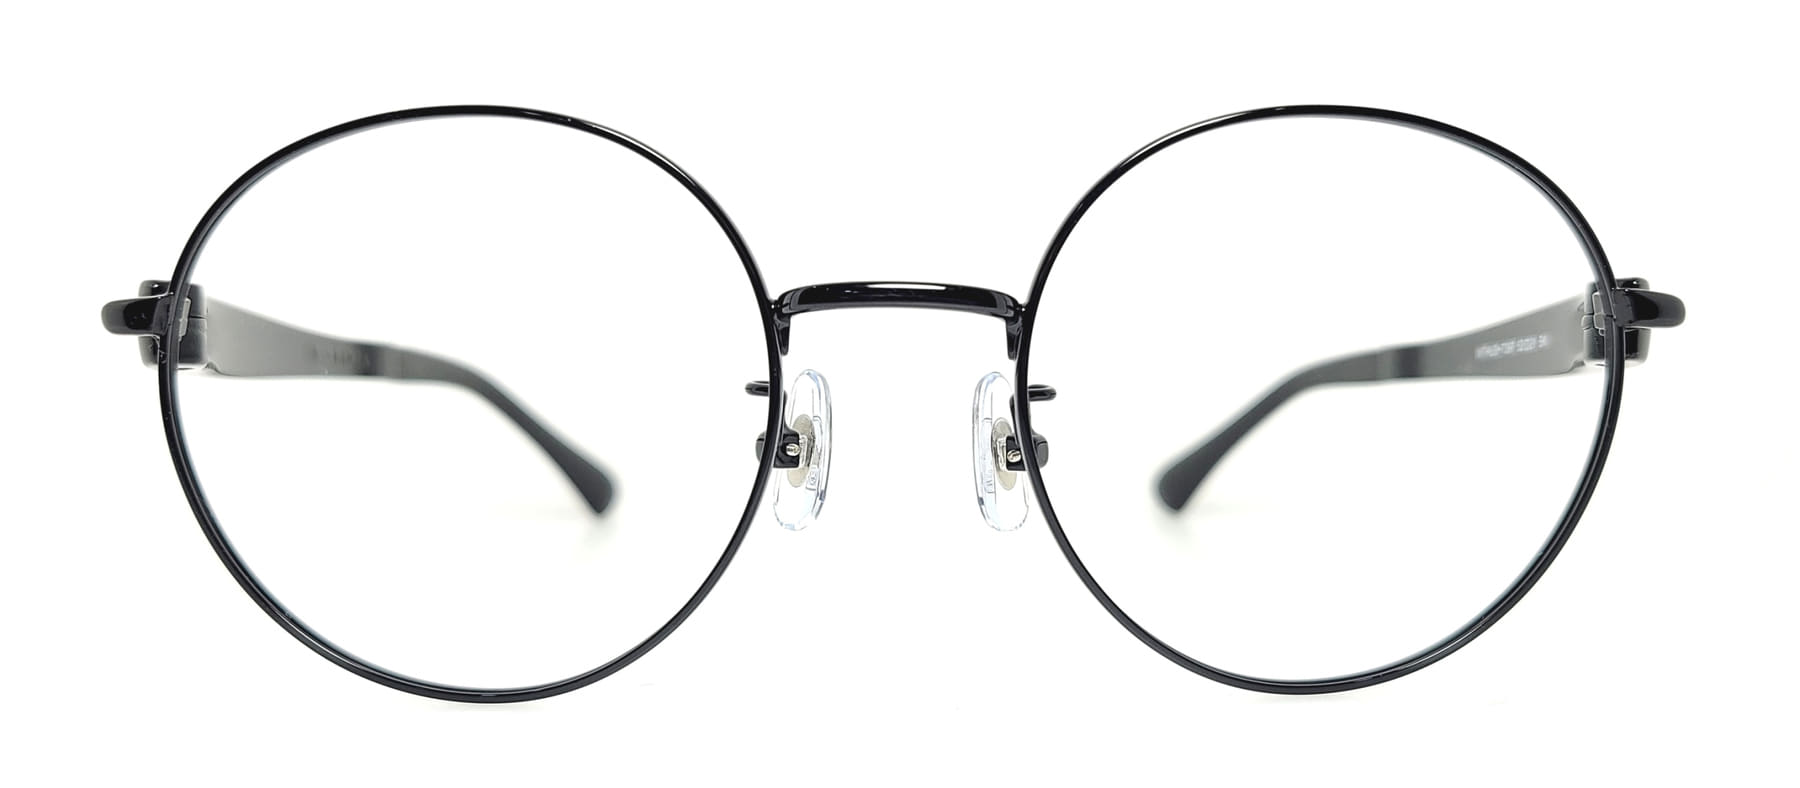 WITHUS-7397, Korean glasses, sunglasses, eyeglasses, glasses